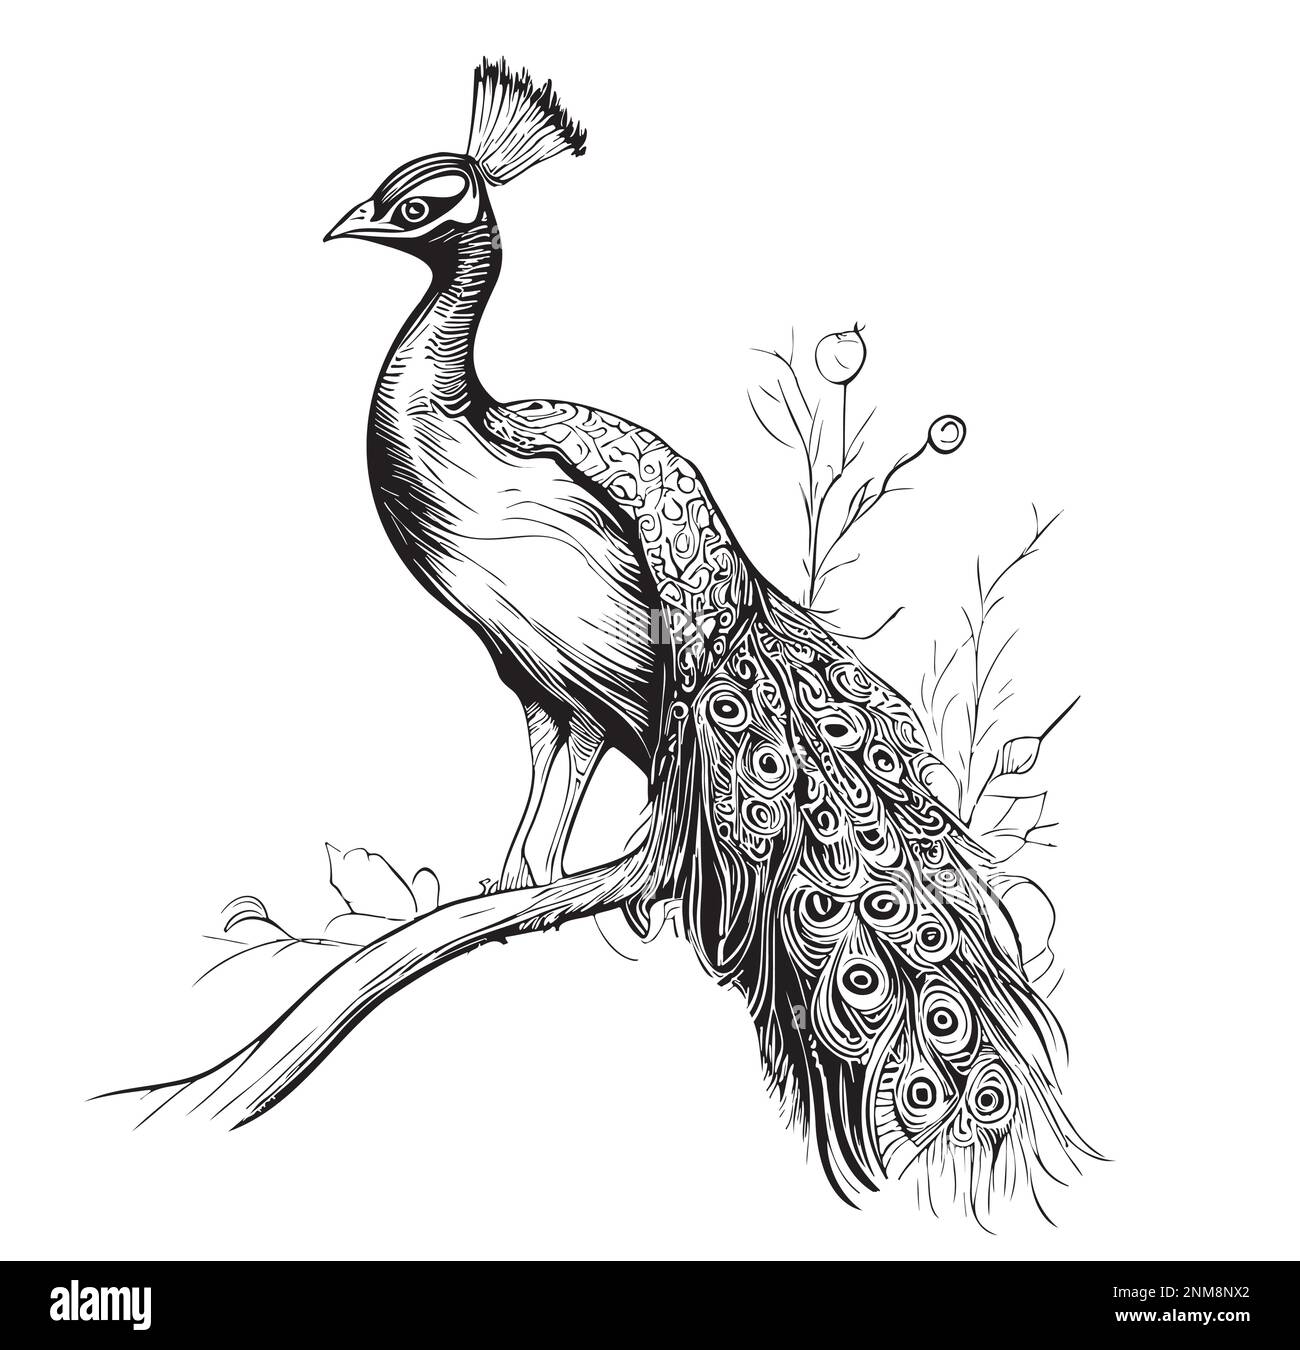 Uccelli di pavone disegnati a mano schizzo Vector illustrazione uccelli belli Illustrazione Vettoriale